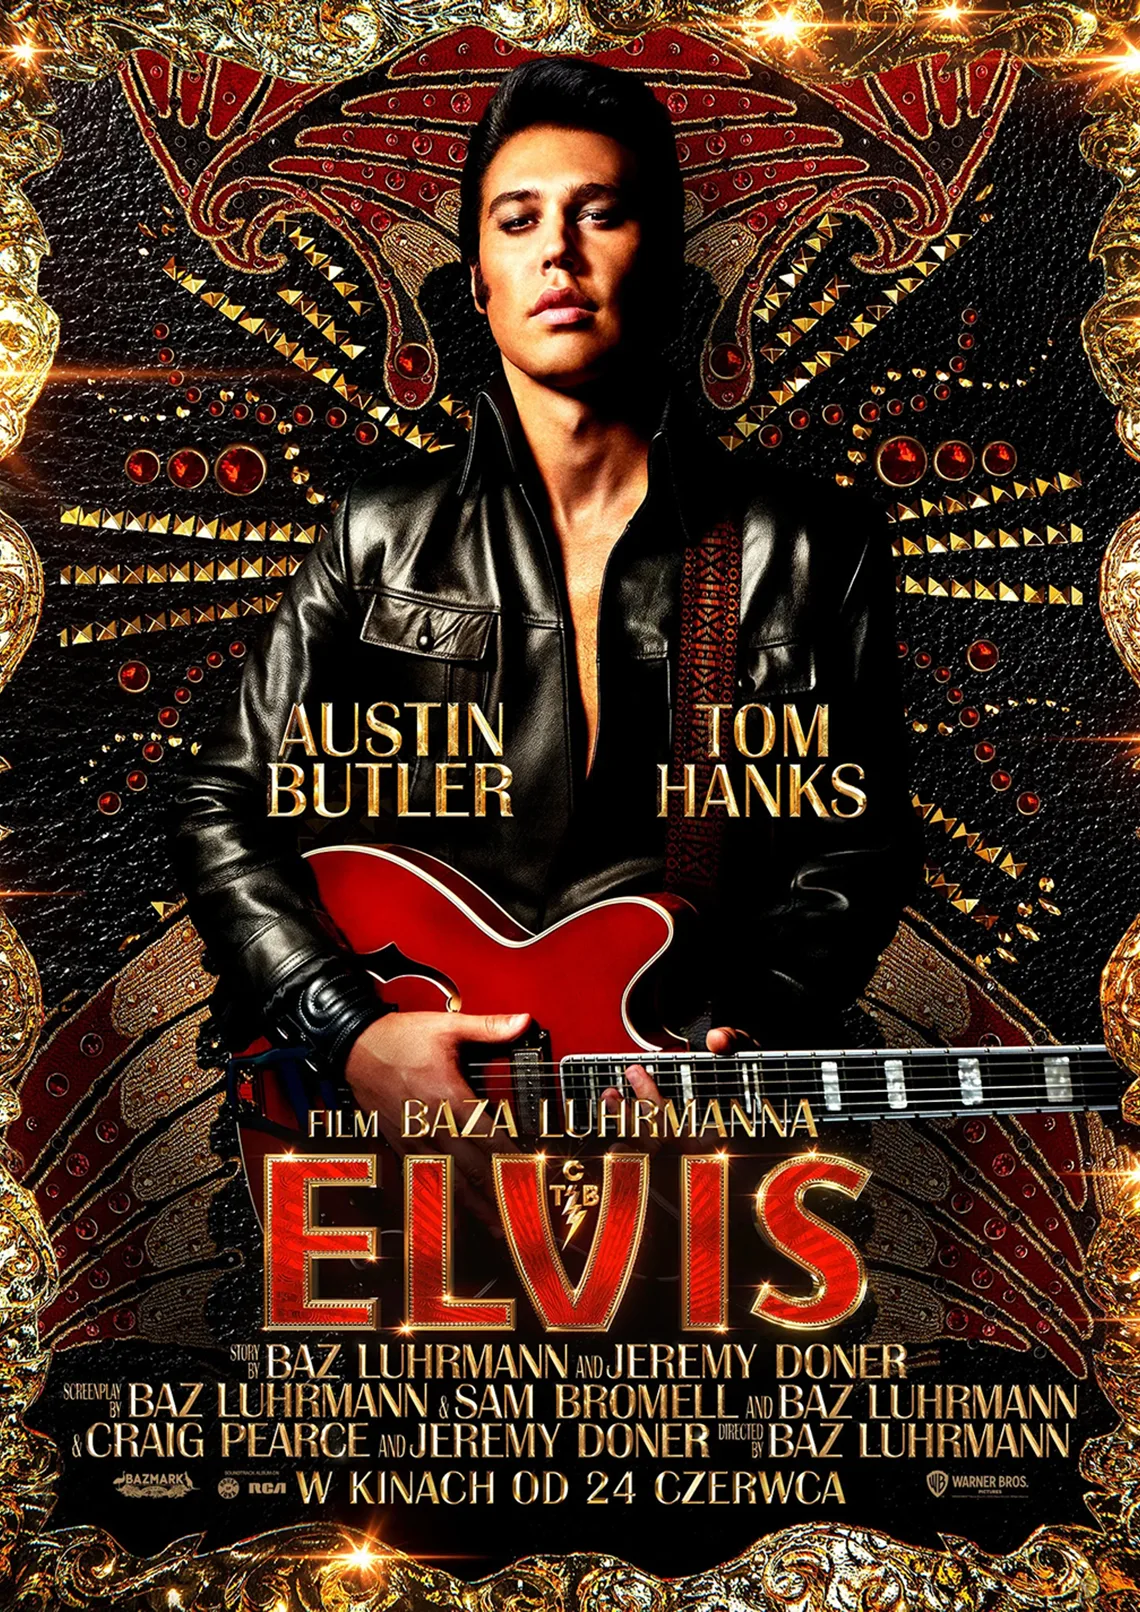 Mężczyzna w skórzanej kurtce, trzyma gitarę. W tle złoto-czerwone wzory. Treść: Austin Butler, Tom Hanks, film Baza Luhrmanna Elvis. 